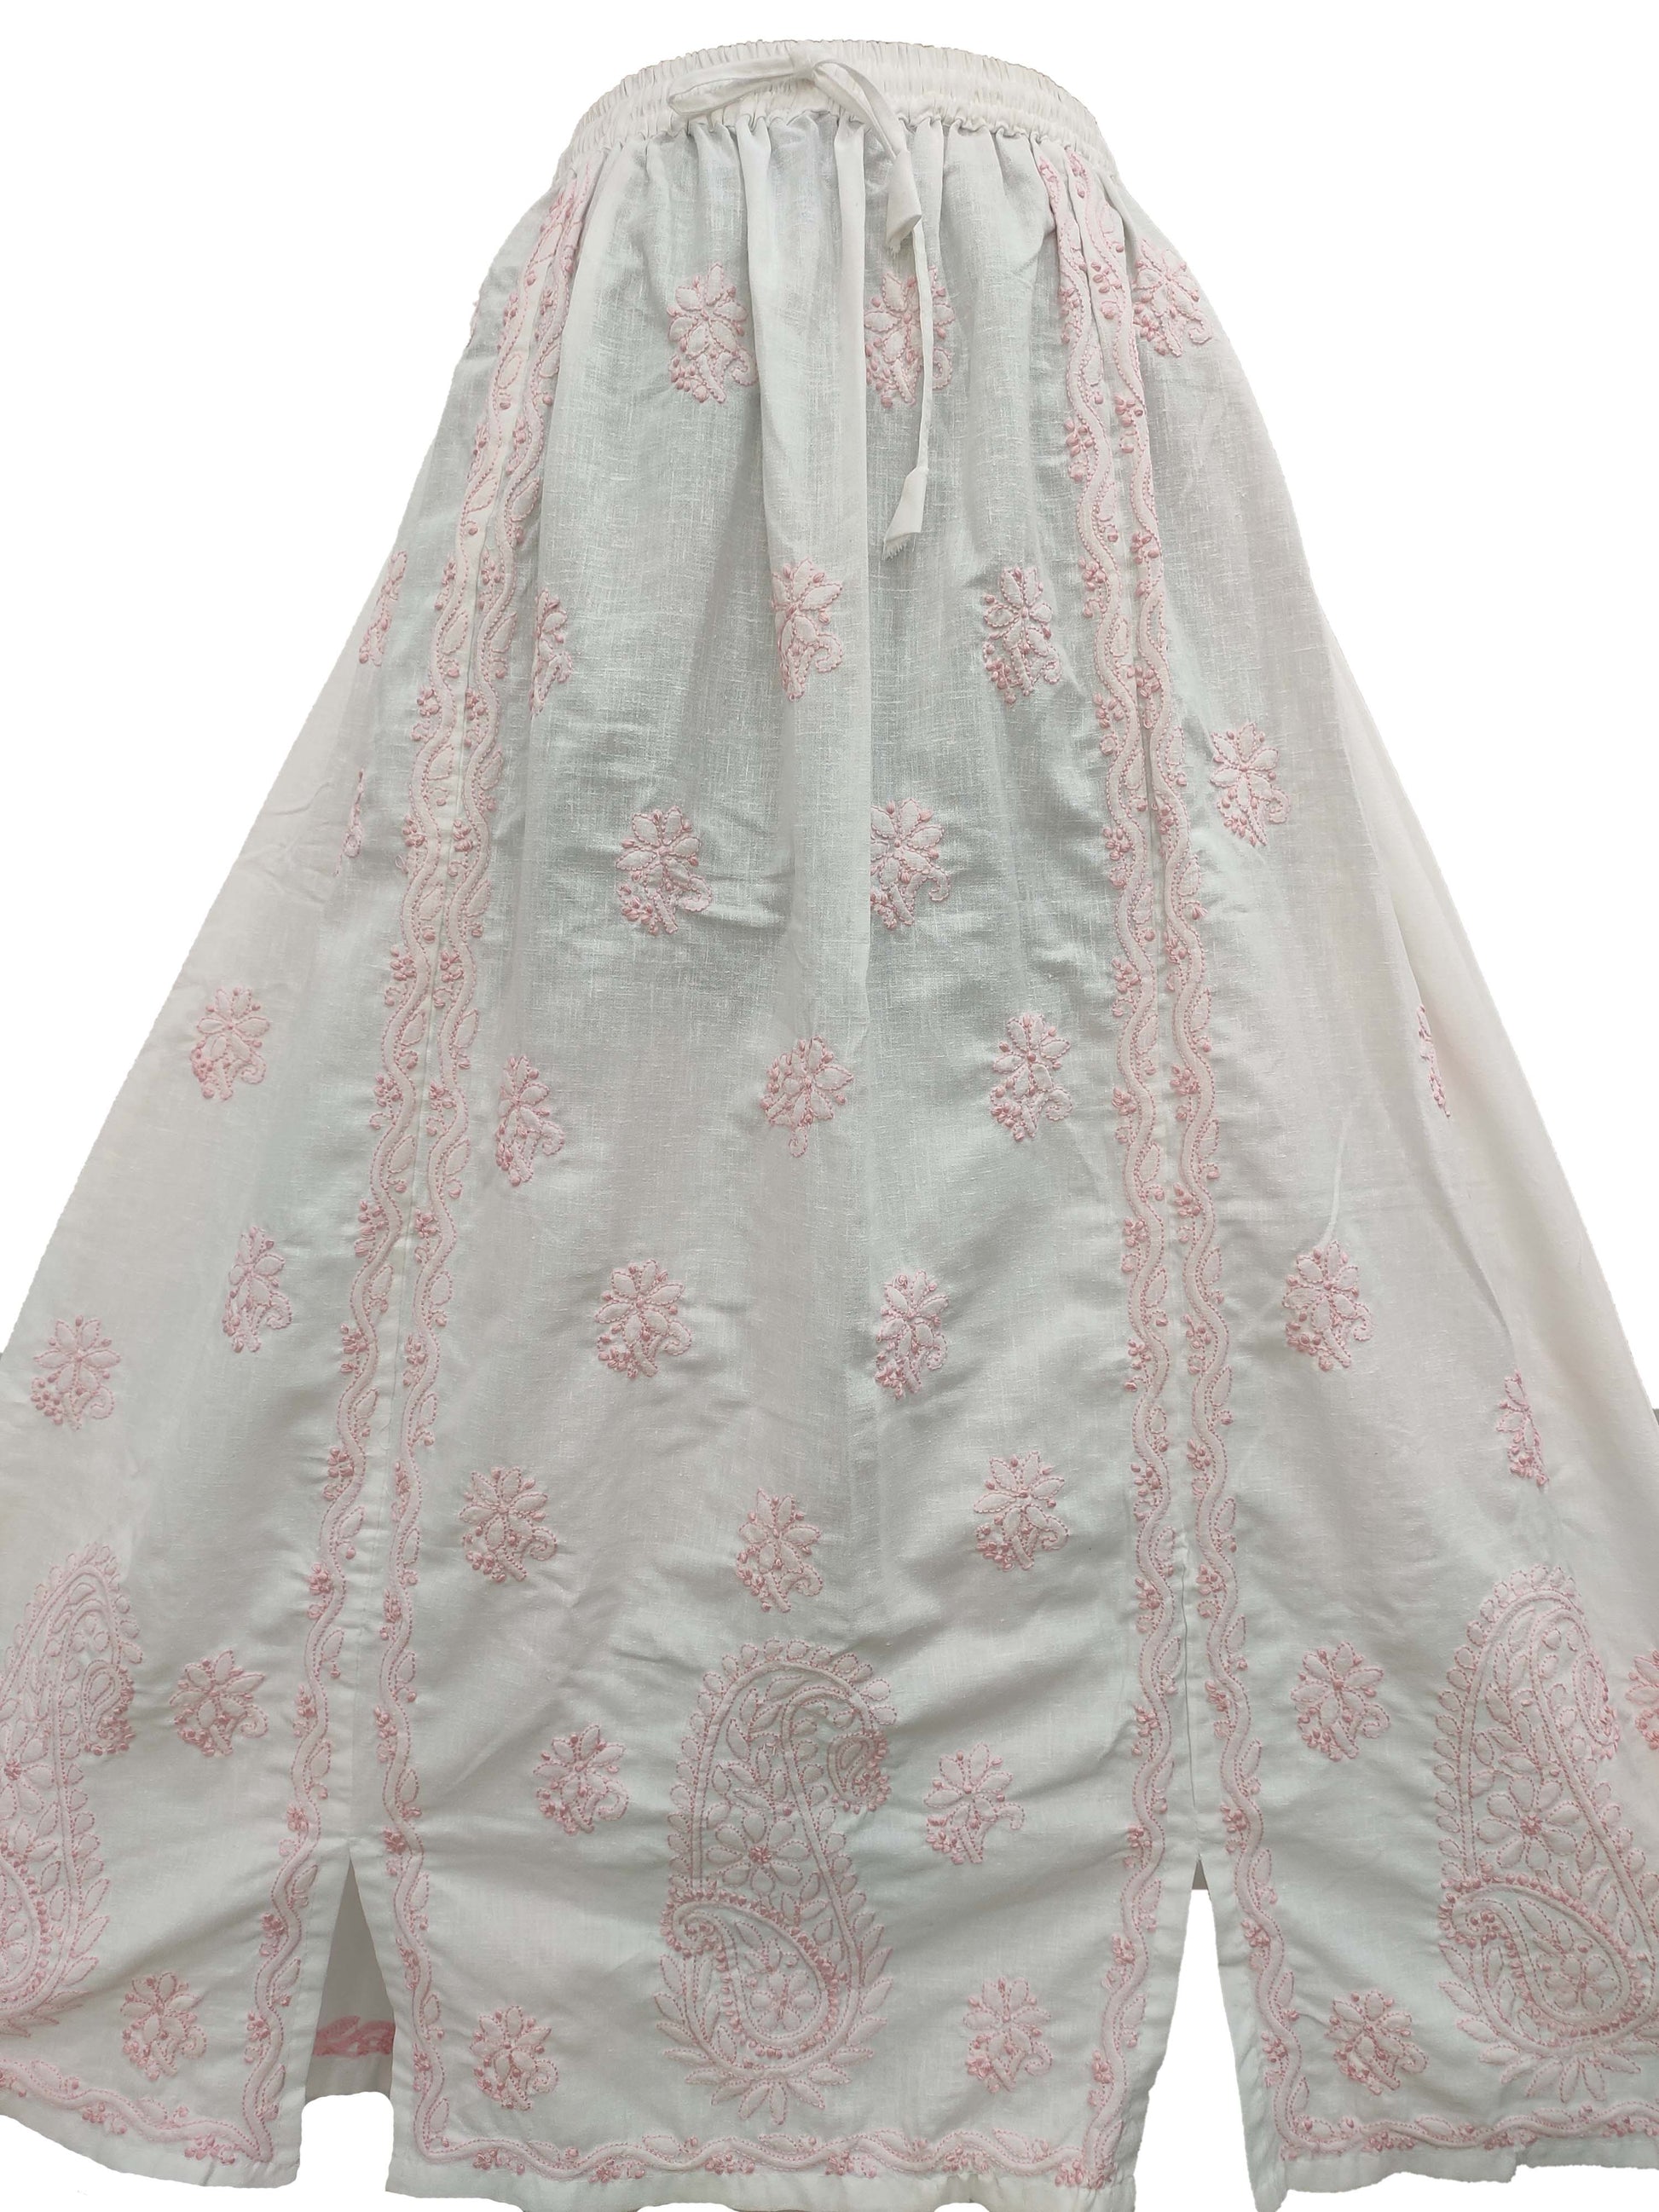 hyamal Chikan Hand Embroidered White Cotton Lucknowi Chikankari Women's Skirt– S1157